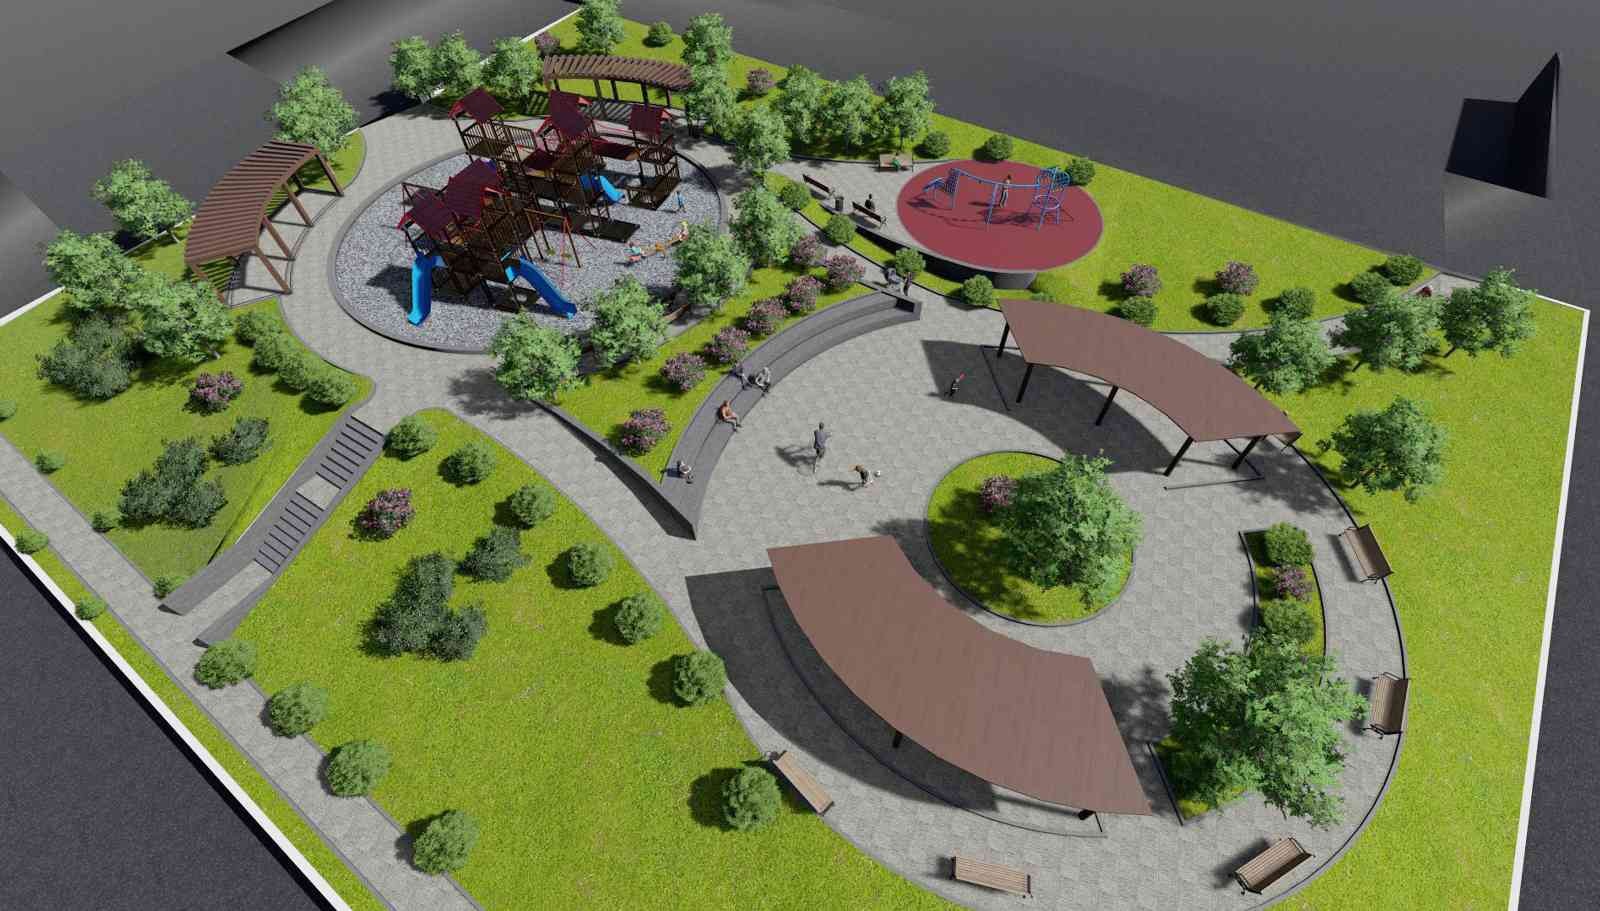 Cevizlidere’nin iki yeni parkı 13 Kasım’da açılıyor #ankara